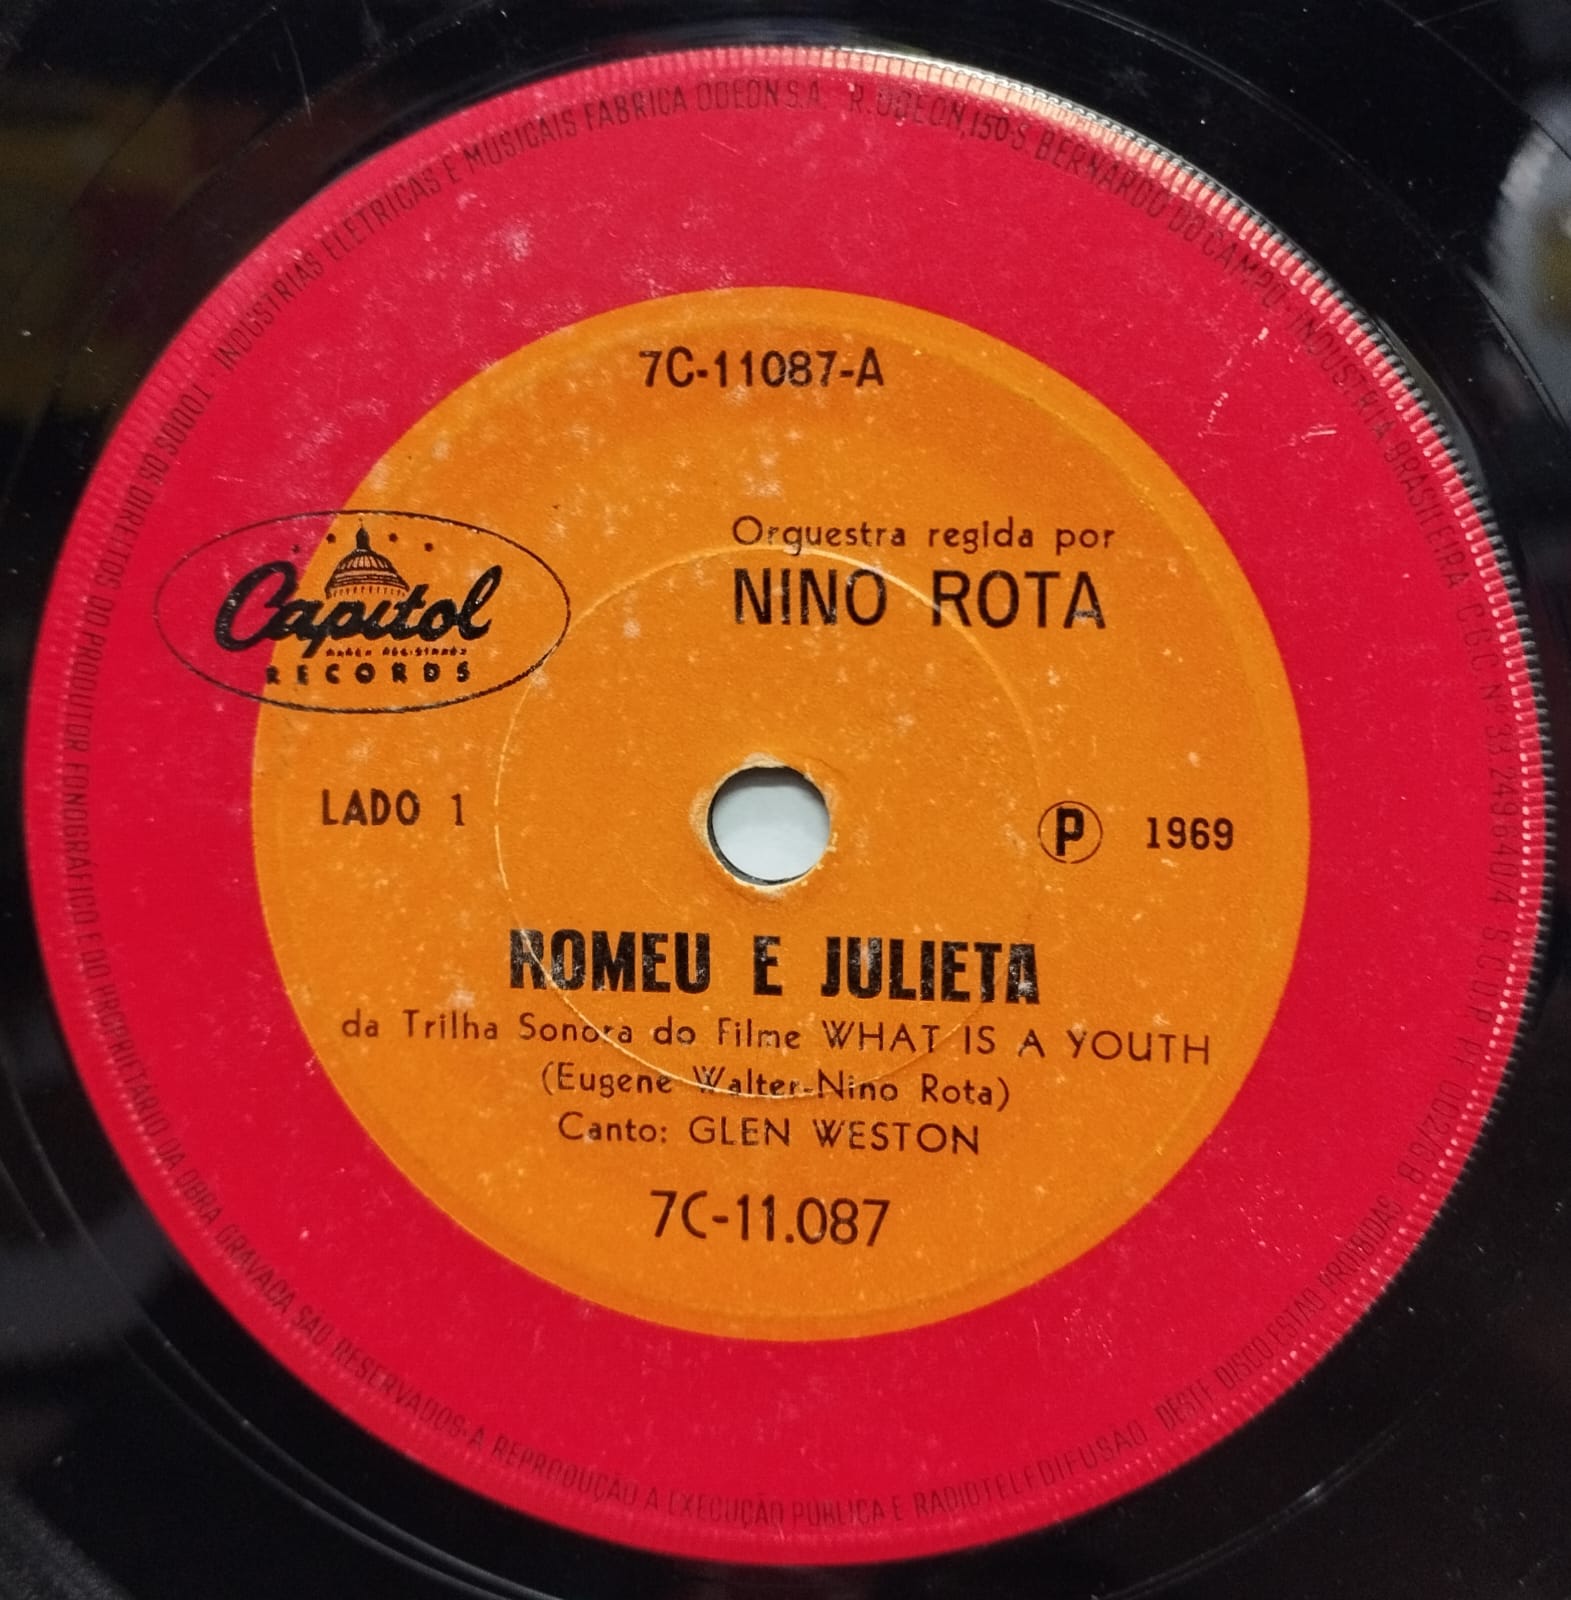 Nino Rota - Romeu e Julieta (Compacto)